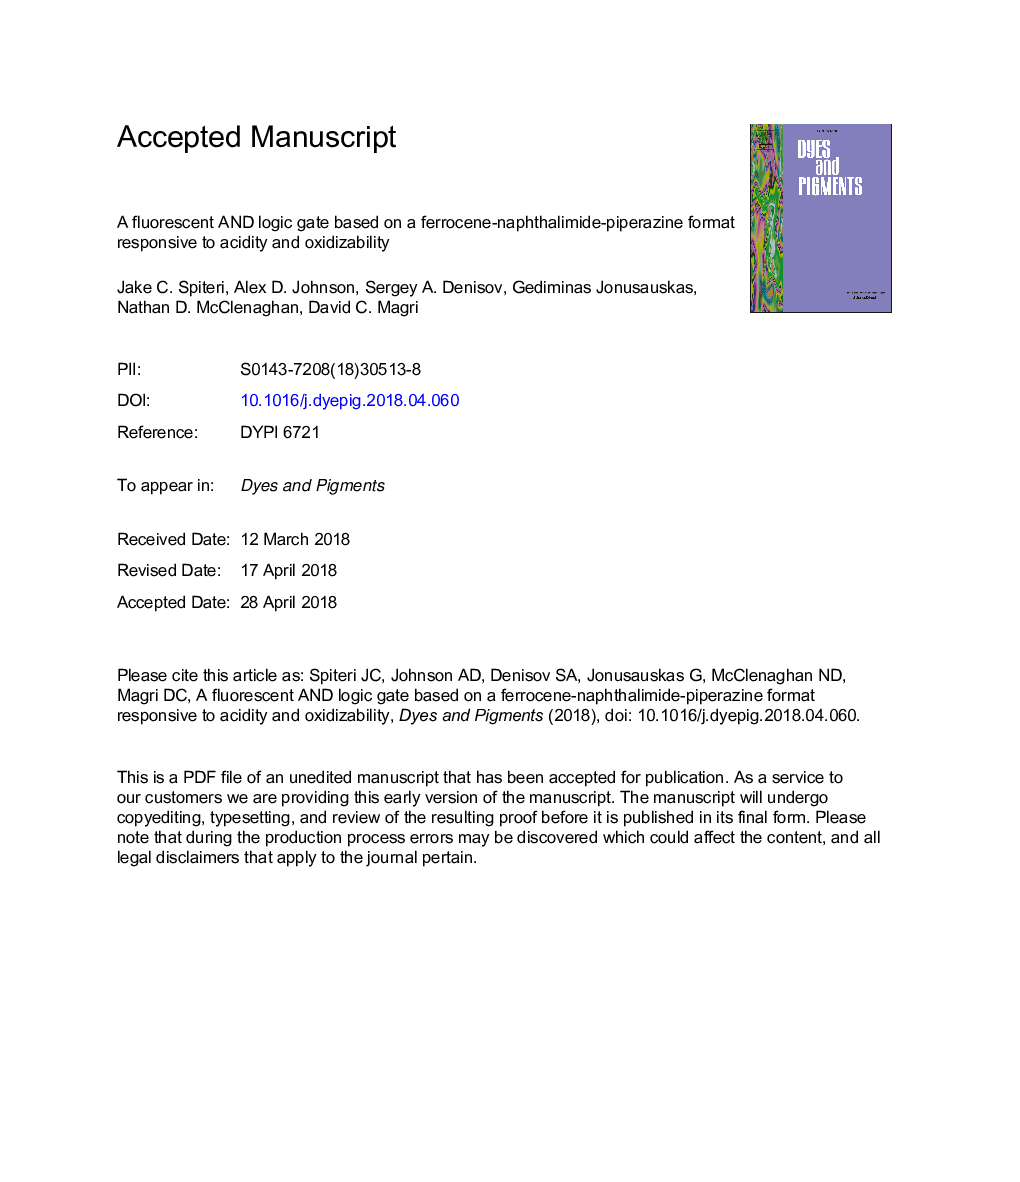 یک دروازه فلورسنت و منطقی بر اساس فرمول فرروژن نفتالیمید پیپرازین که به اسیدیته و اکسید زایی واکنش نشان می دهد 